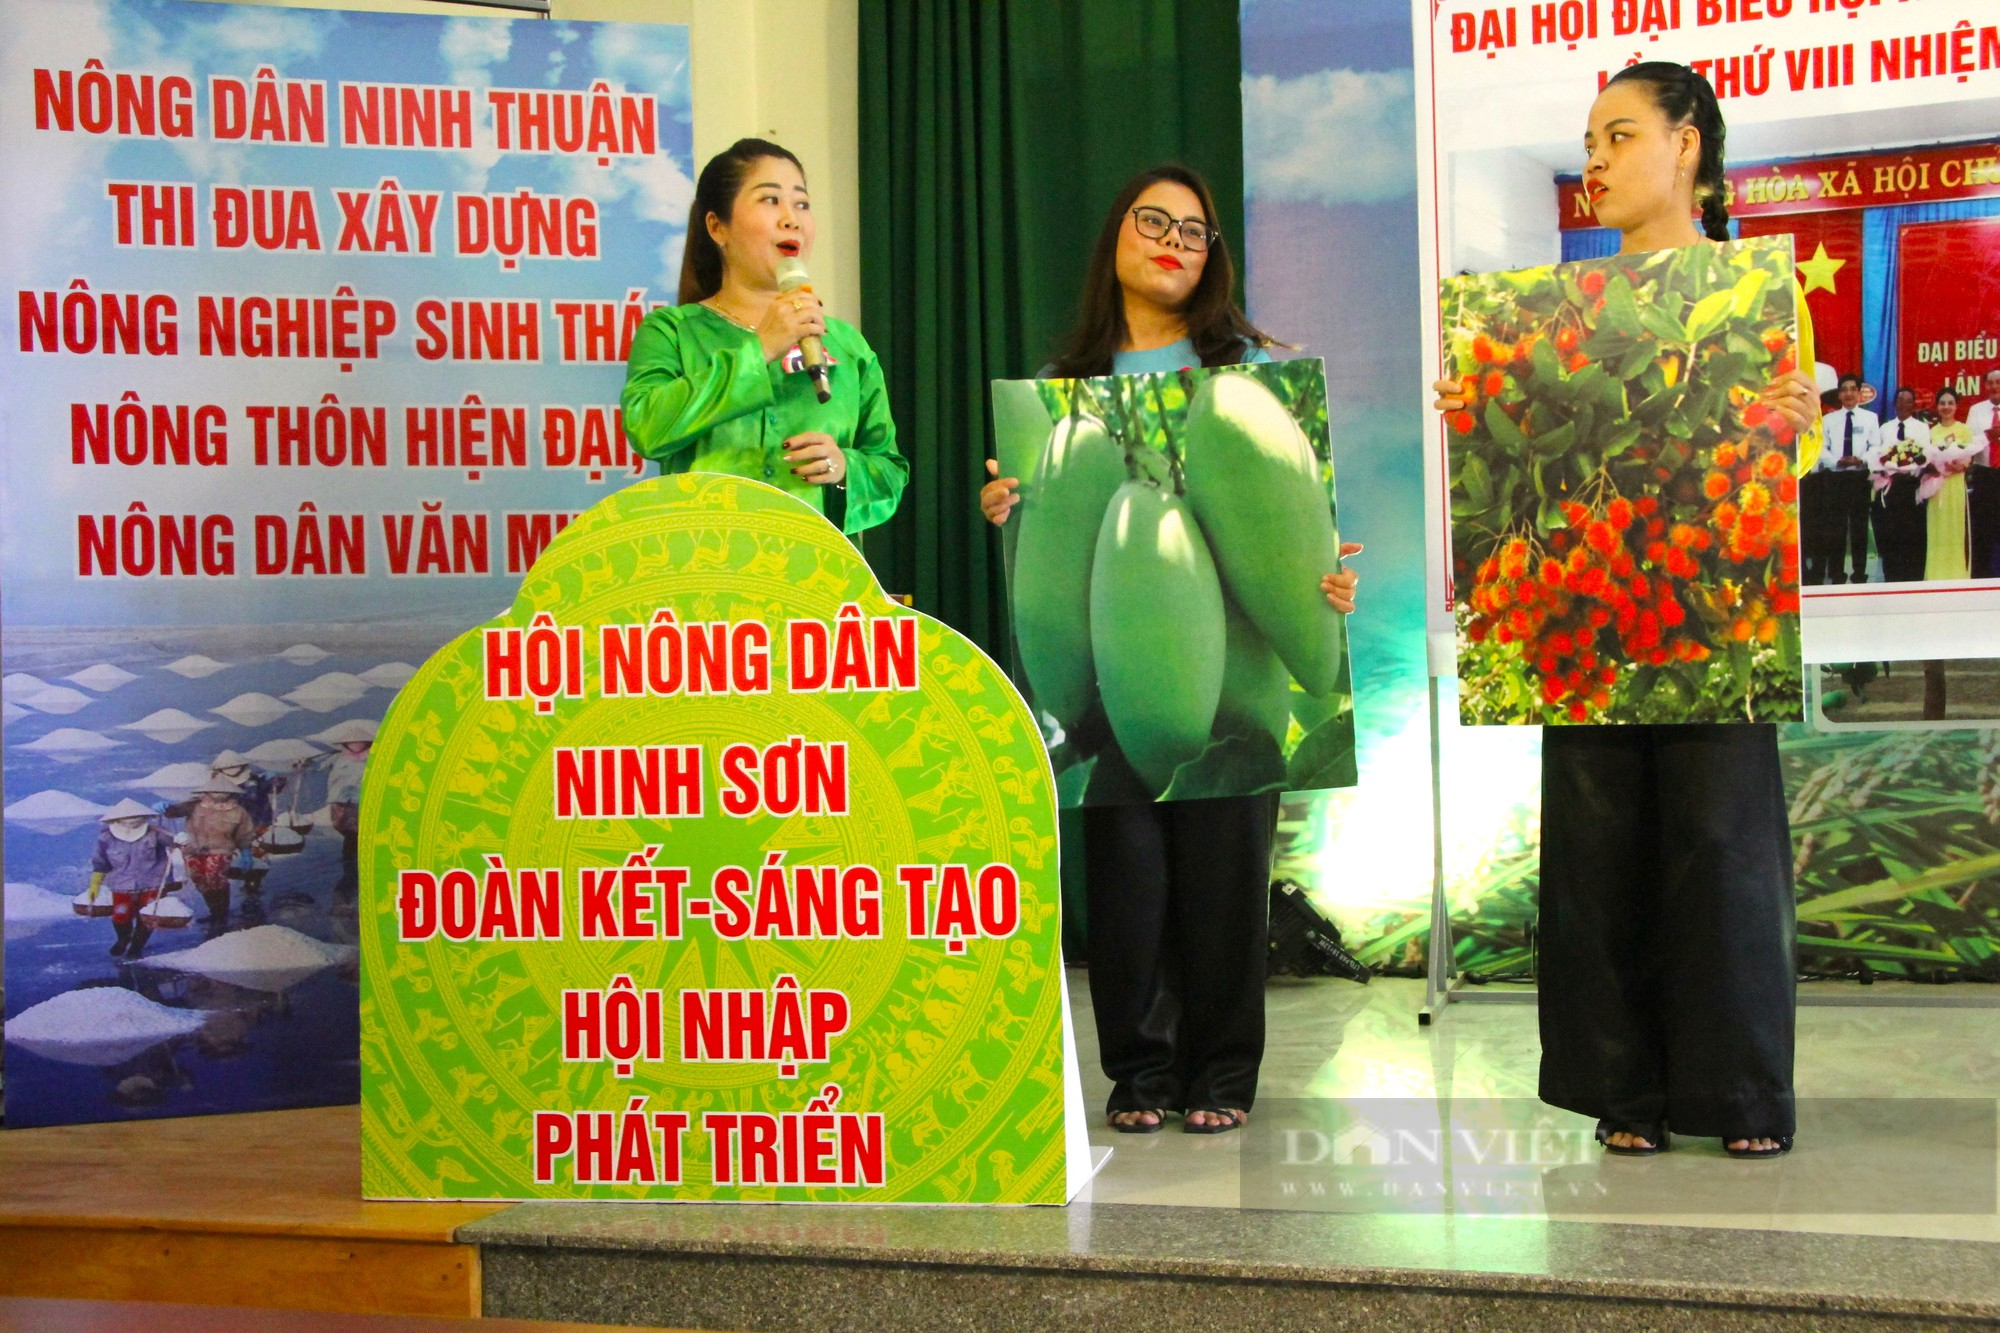 Nông dân Ninh Thuận trổ tài tại hội thi nhà nông đua tài năm 2023 - Ảnh 2.